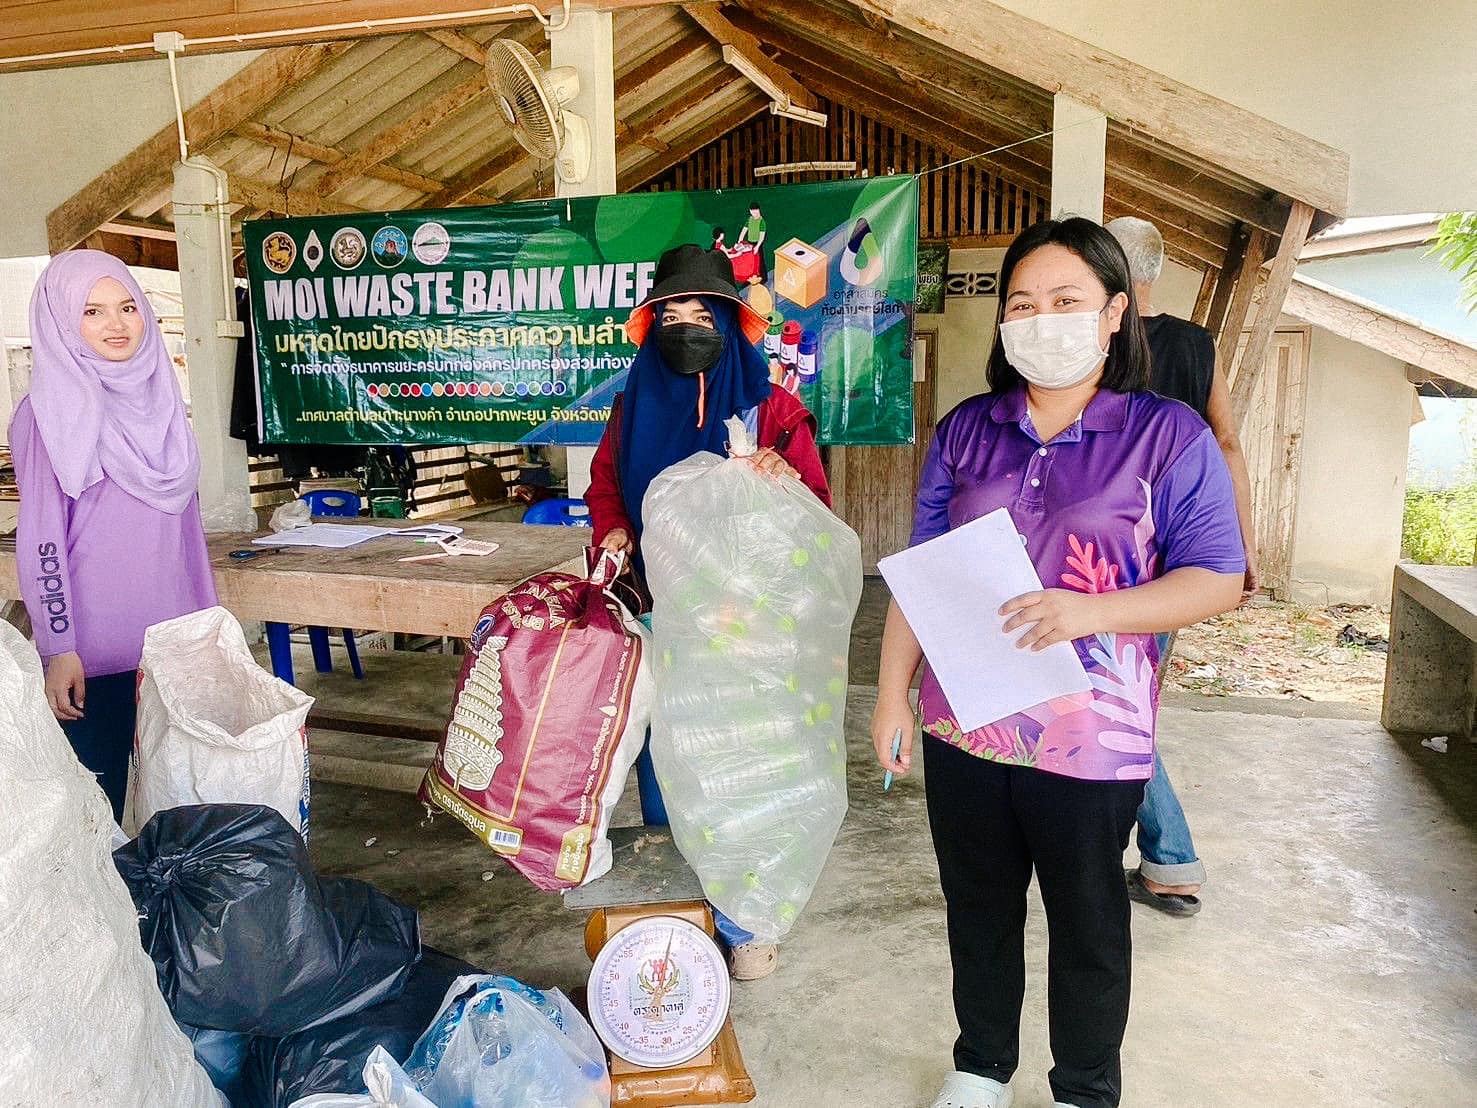 วันพุธ ที่ 27 มีนาคม 2567 เทศบาลตำบลเกาะนางคำ จัดกิจกรรม "MOI Waste Bank Week - มหาดไทยปักธงประกาศความสำเร็จ 1 องค์กรปกครองส่วนท้องถิ่น 1 ธนาคารขยะ" ของธนาคารชุมชนเกาะนางคำ ณ กองทุนหมู่บ้านบ้านเกาะนางคำเหนือ  หมู่ที่ 5 ตำบลเกาะนางคำ อำเภอปากพะยูน จังหวัดพัทลุง